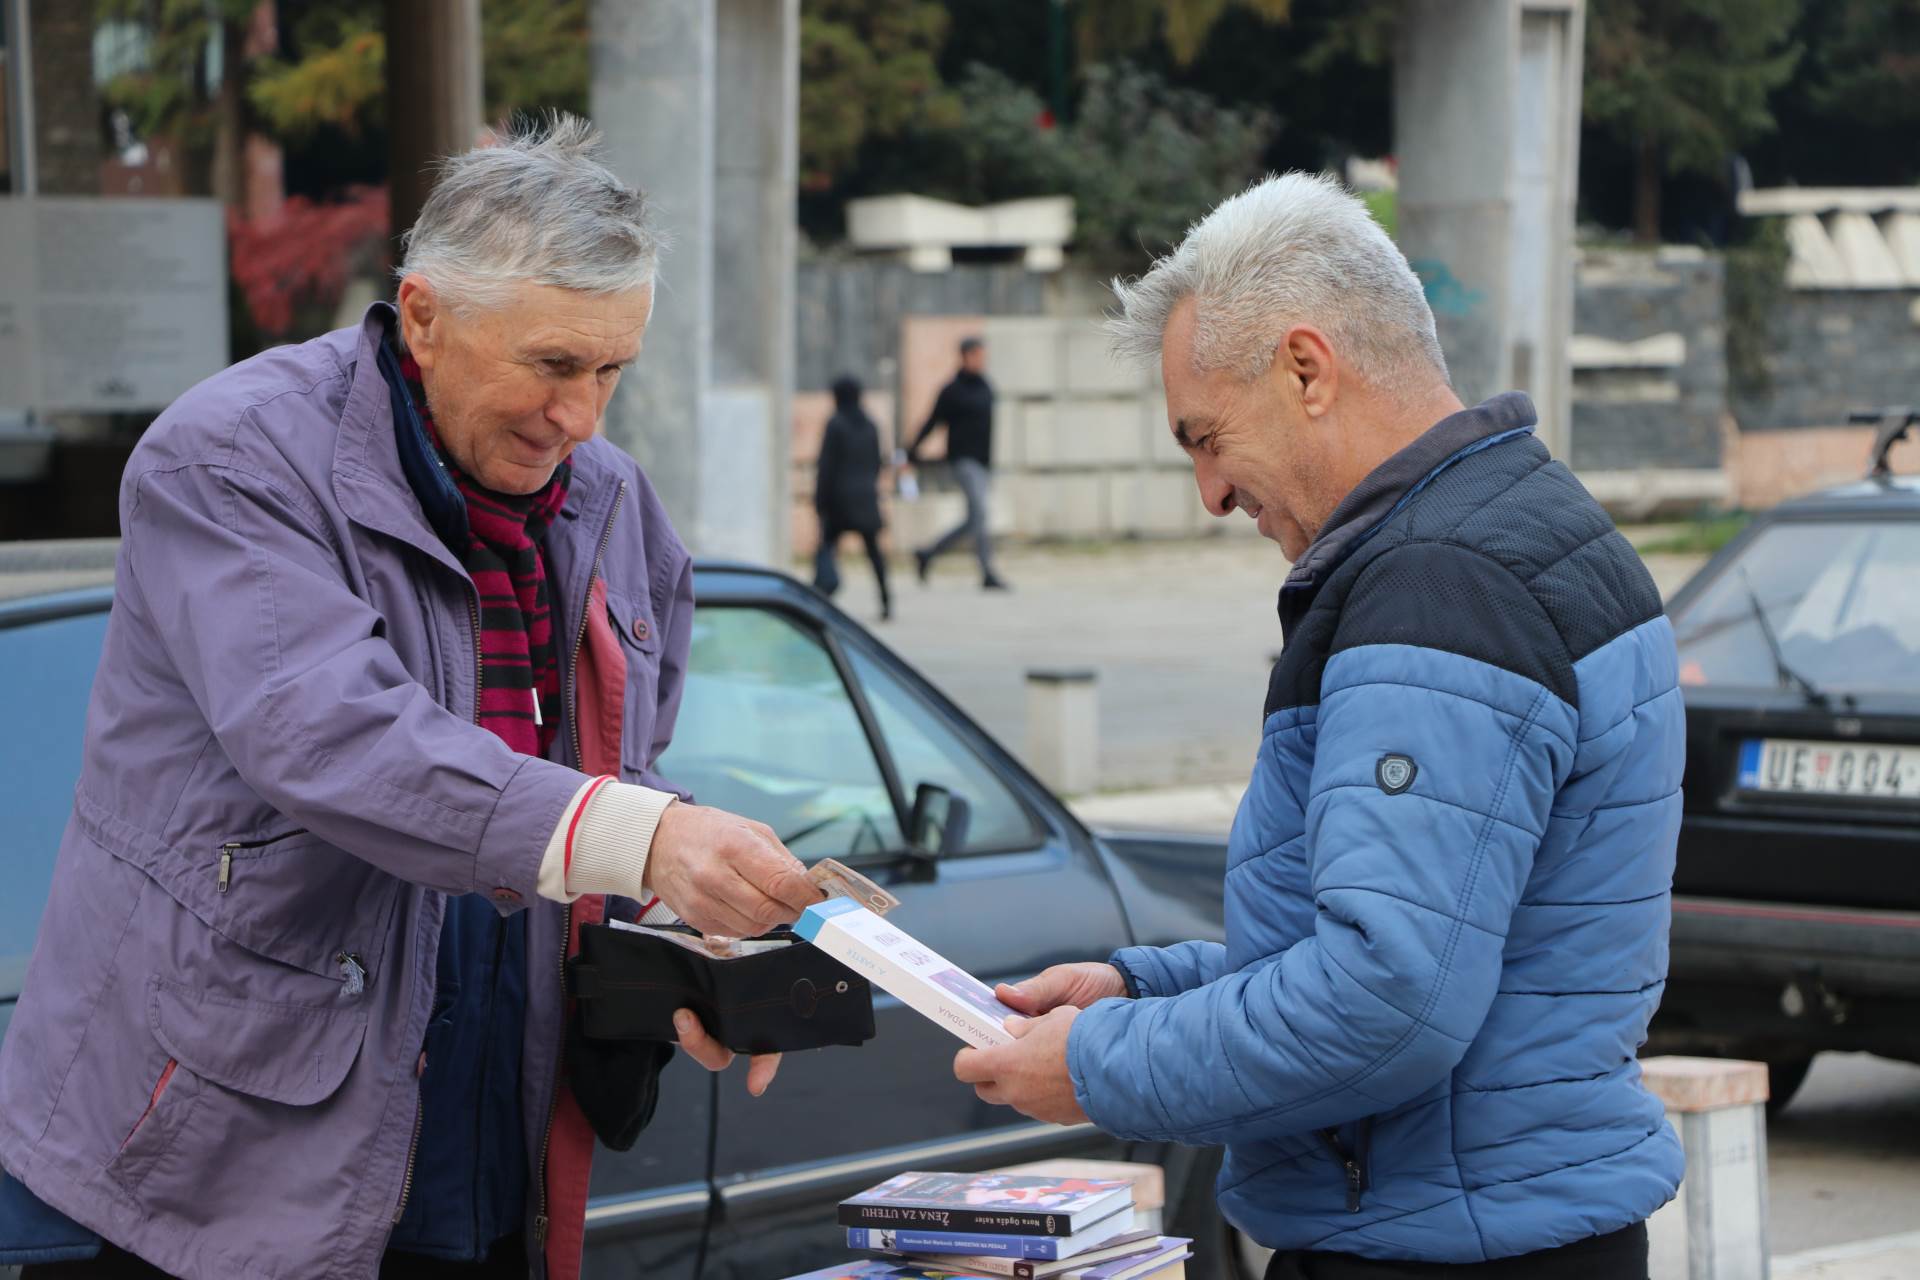  Profesor u penziji prodaje knjige na ulici 